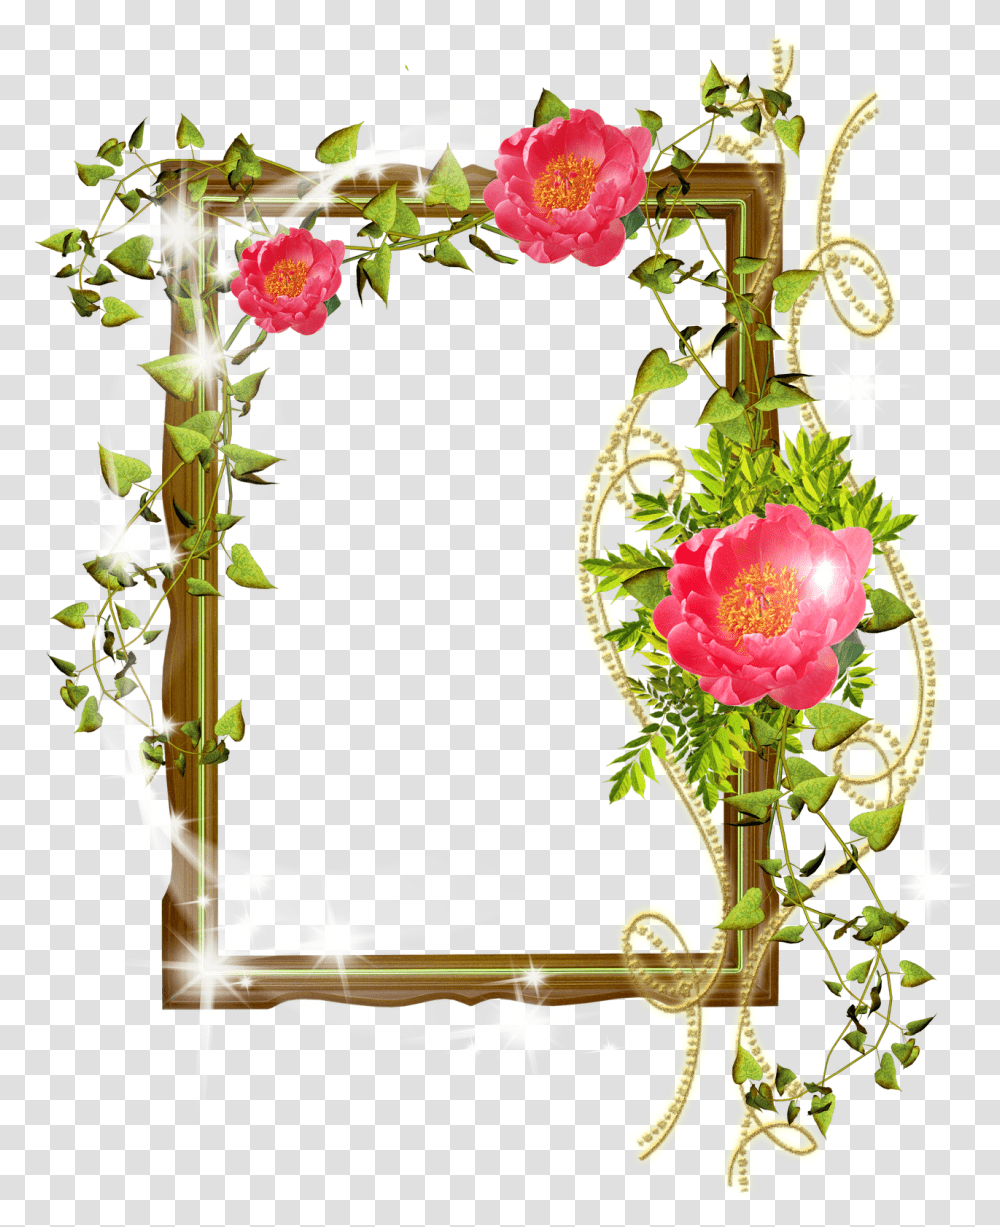 Flower Frame Photoshop Background Photoshop Frame Design Psd, Plant, Graphics, Art, Floral Design Transparent Png